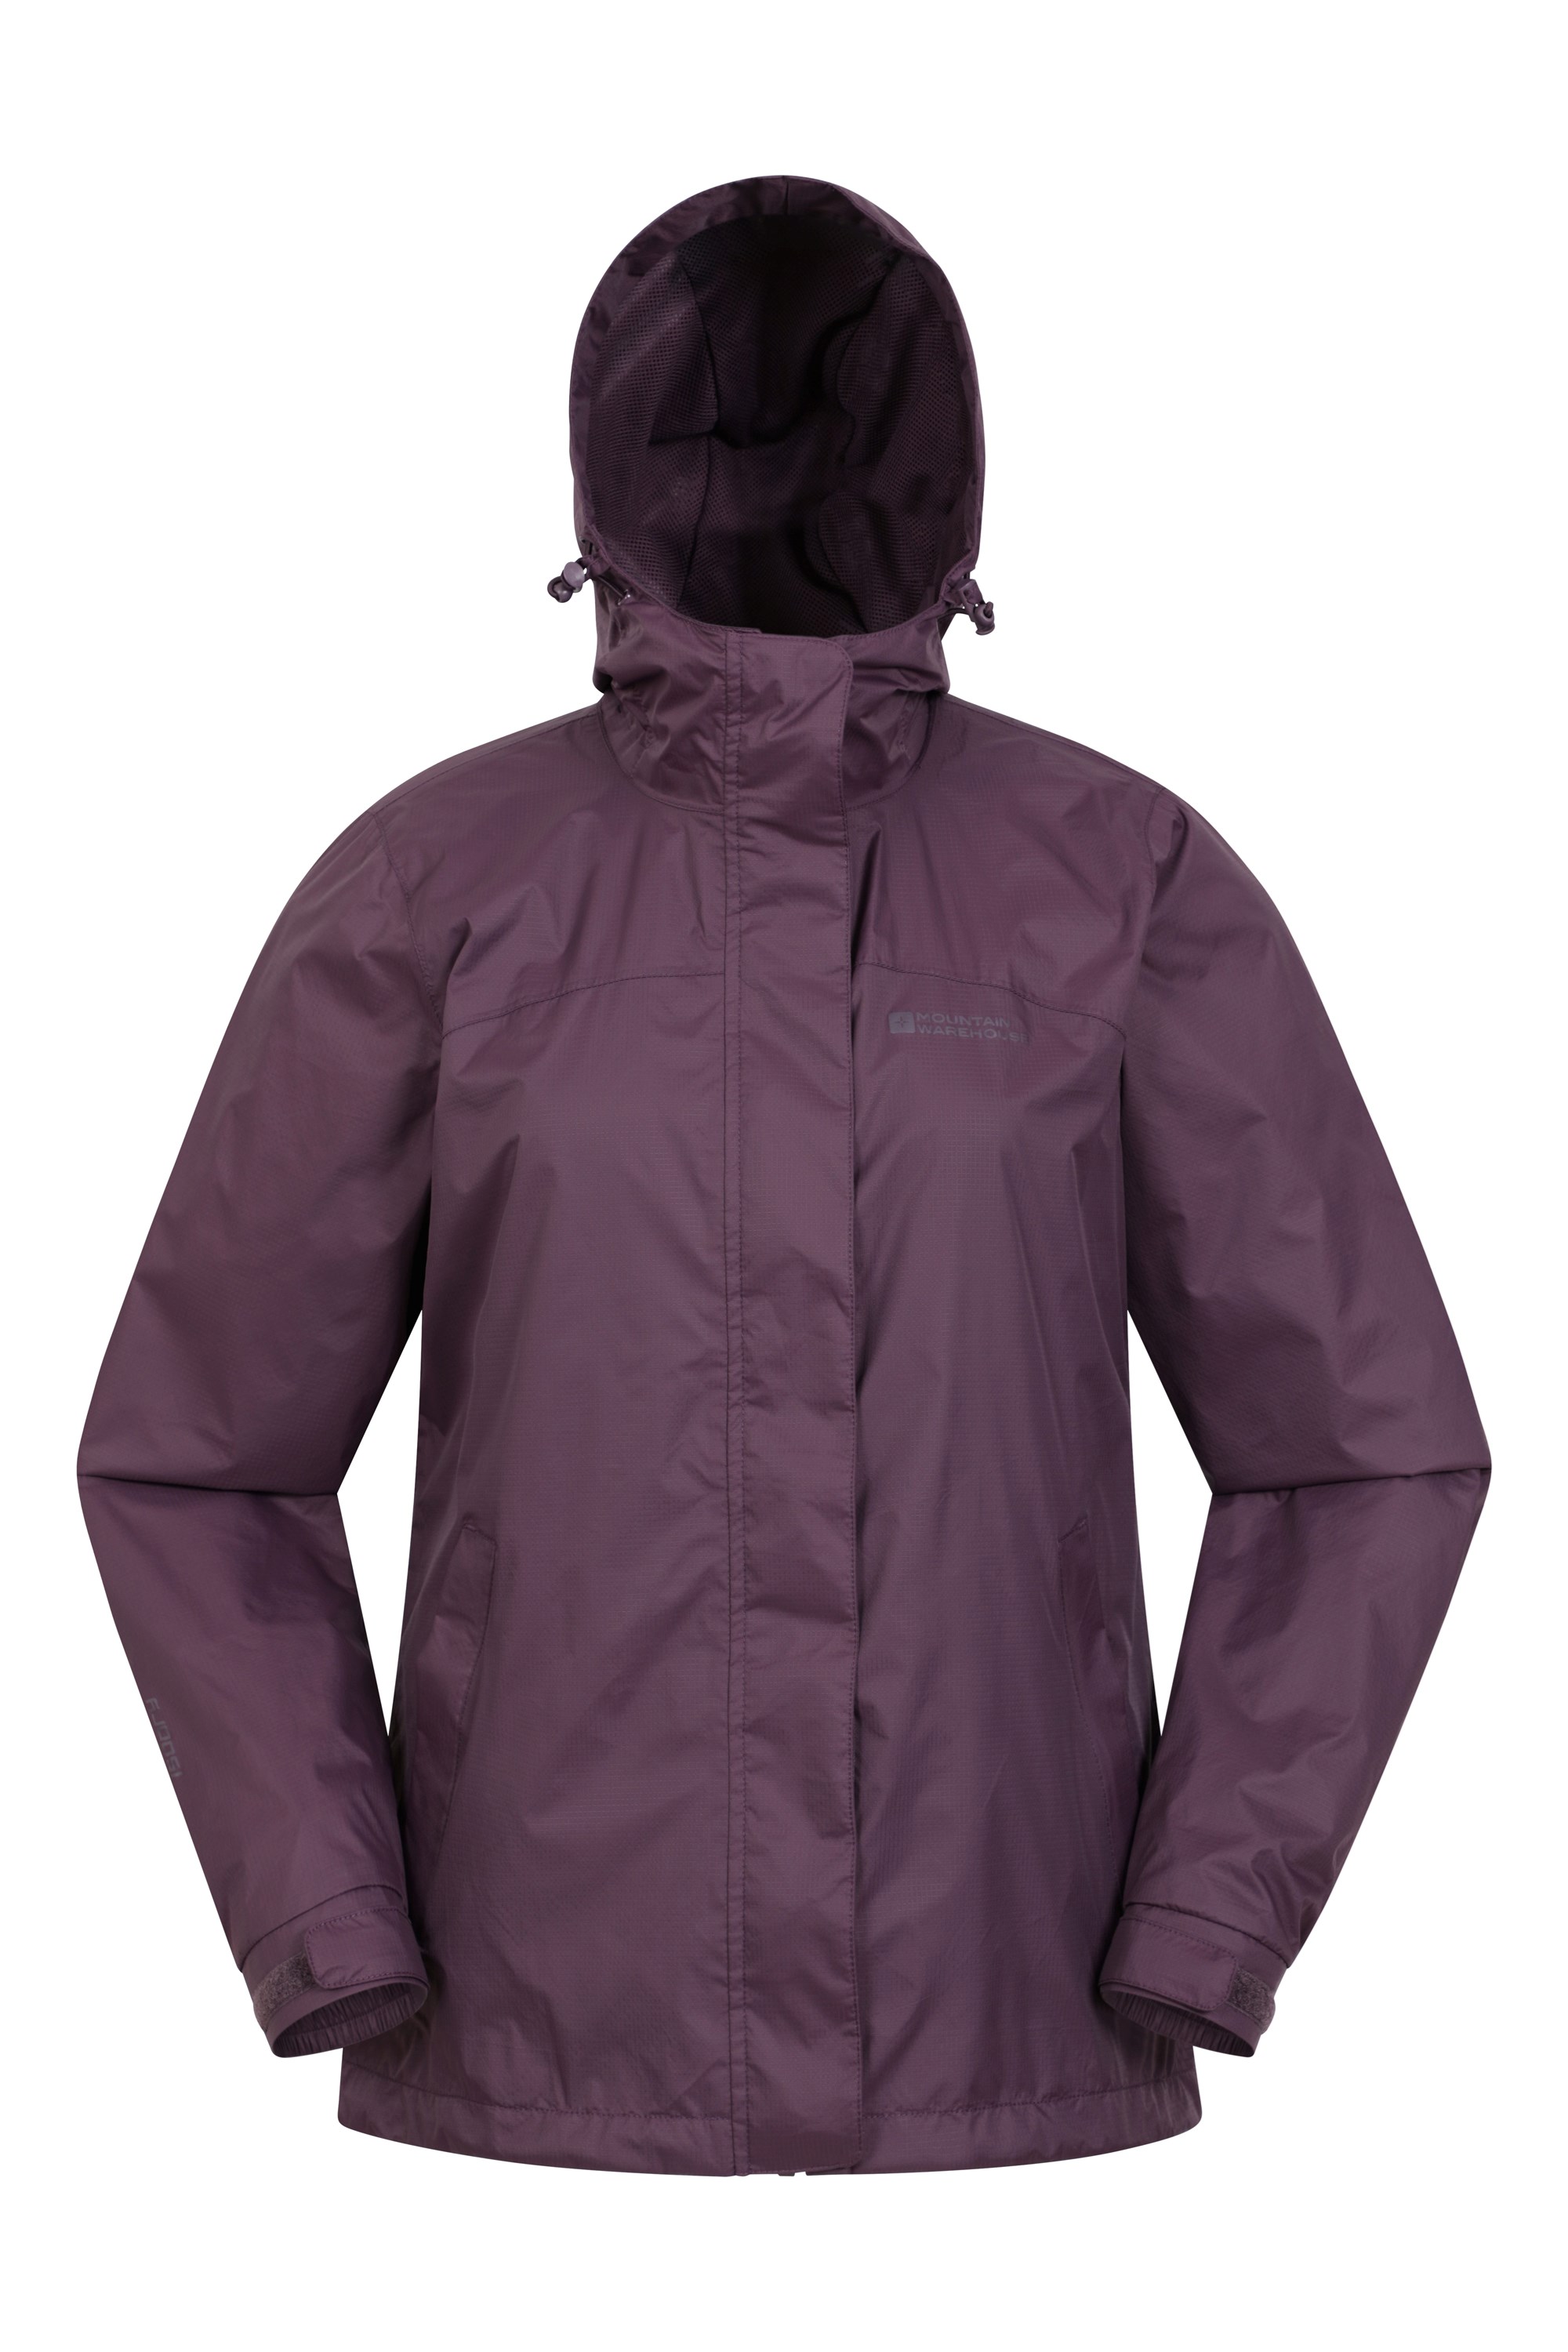 Ladies′ Waterproof Jacket Clothing Windbreaker Rain, 53% OFF